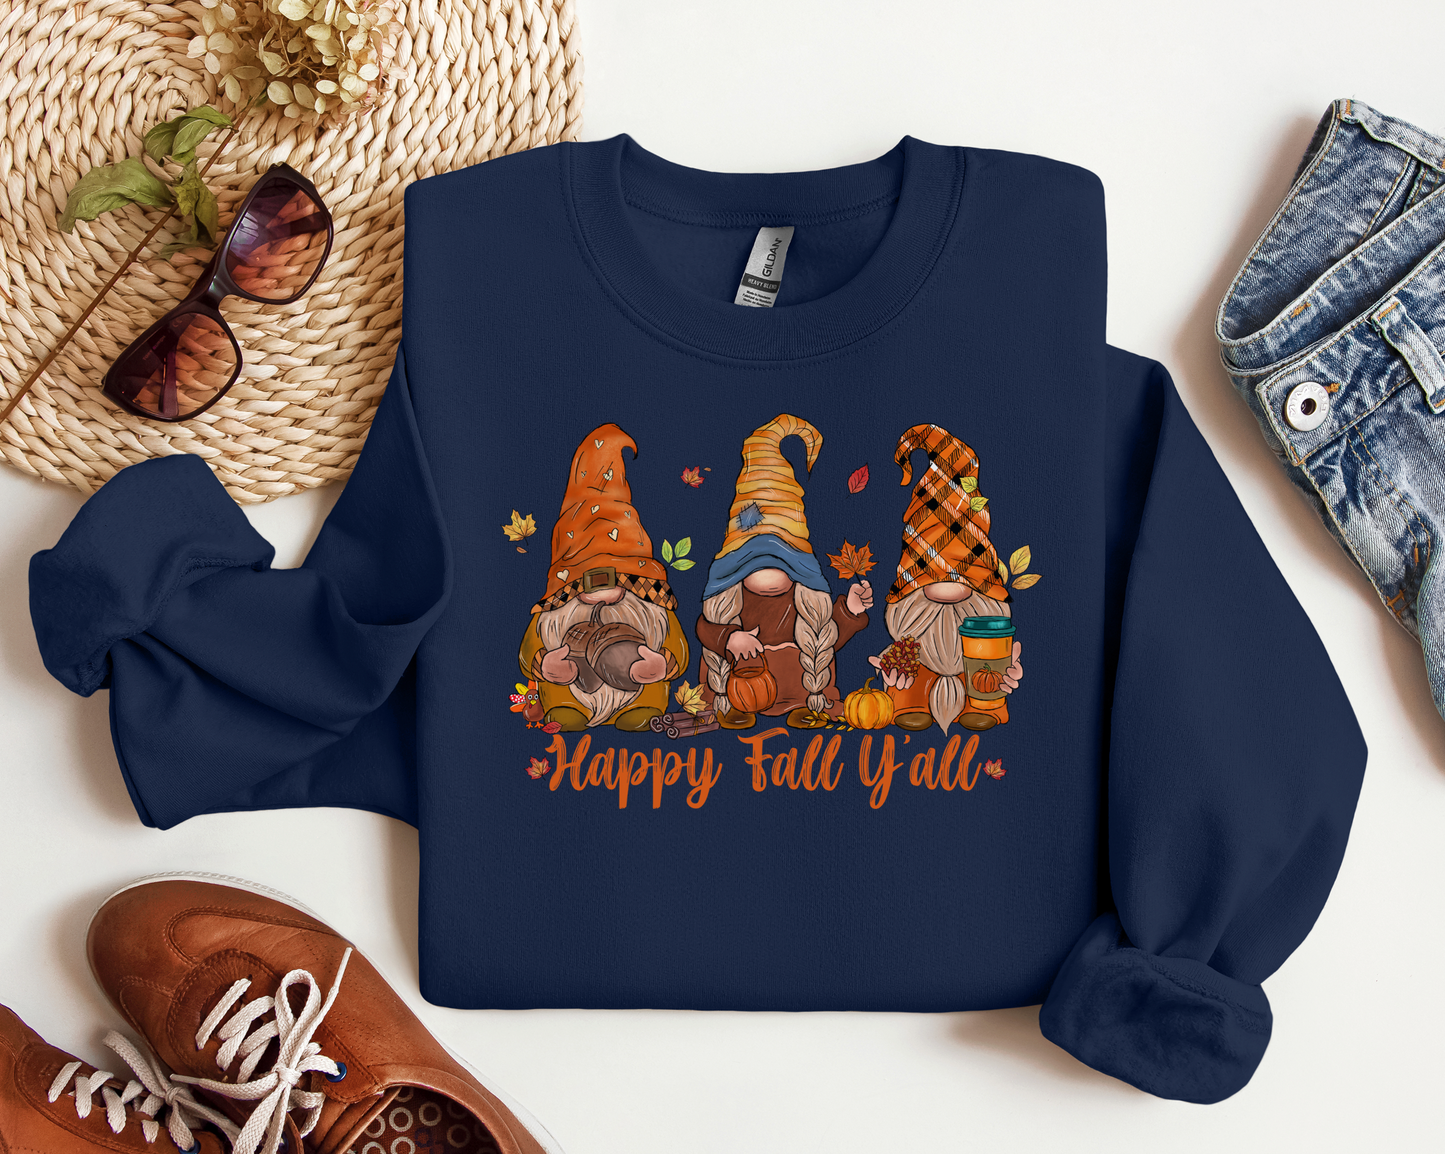 Happy Fall Ya'll Gnome Sweatshirt - Autumn Gnome Sweatshirt